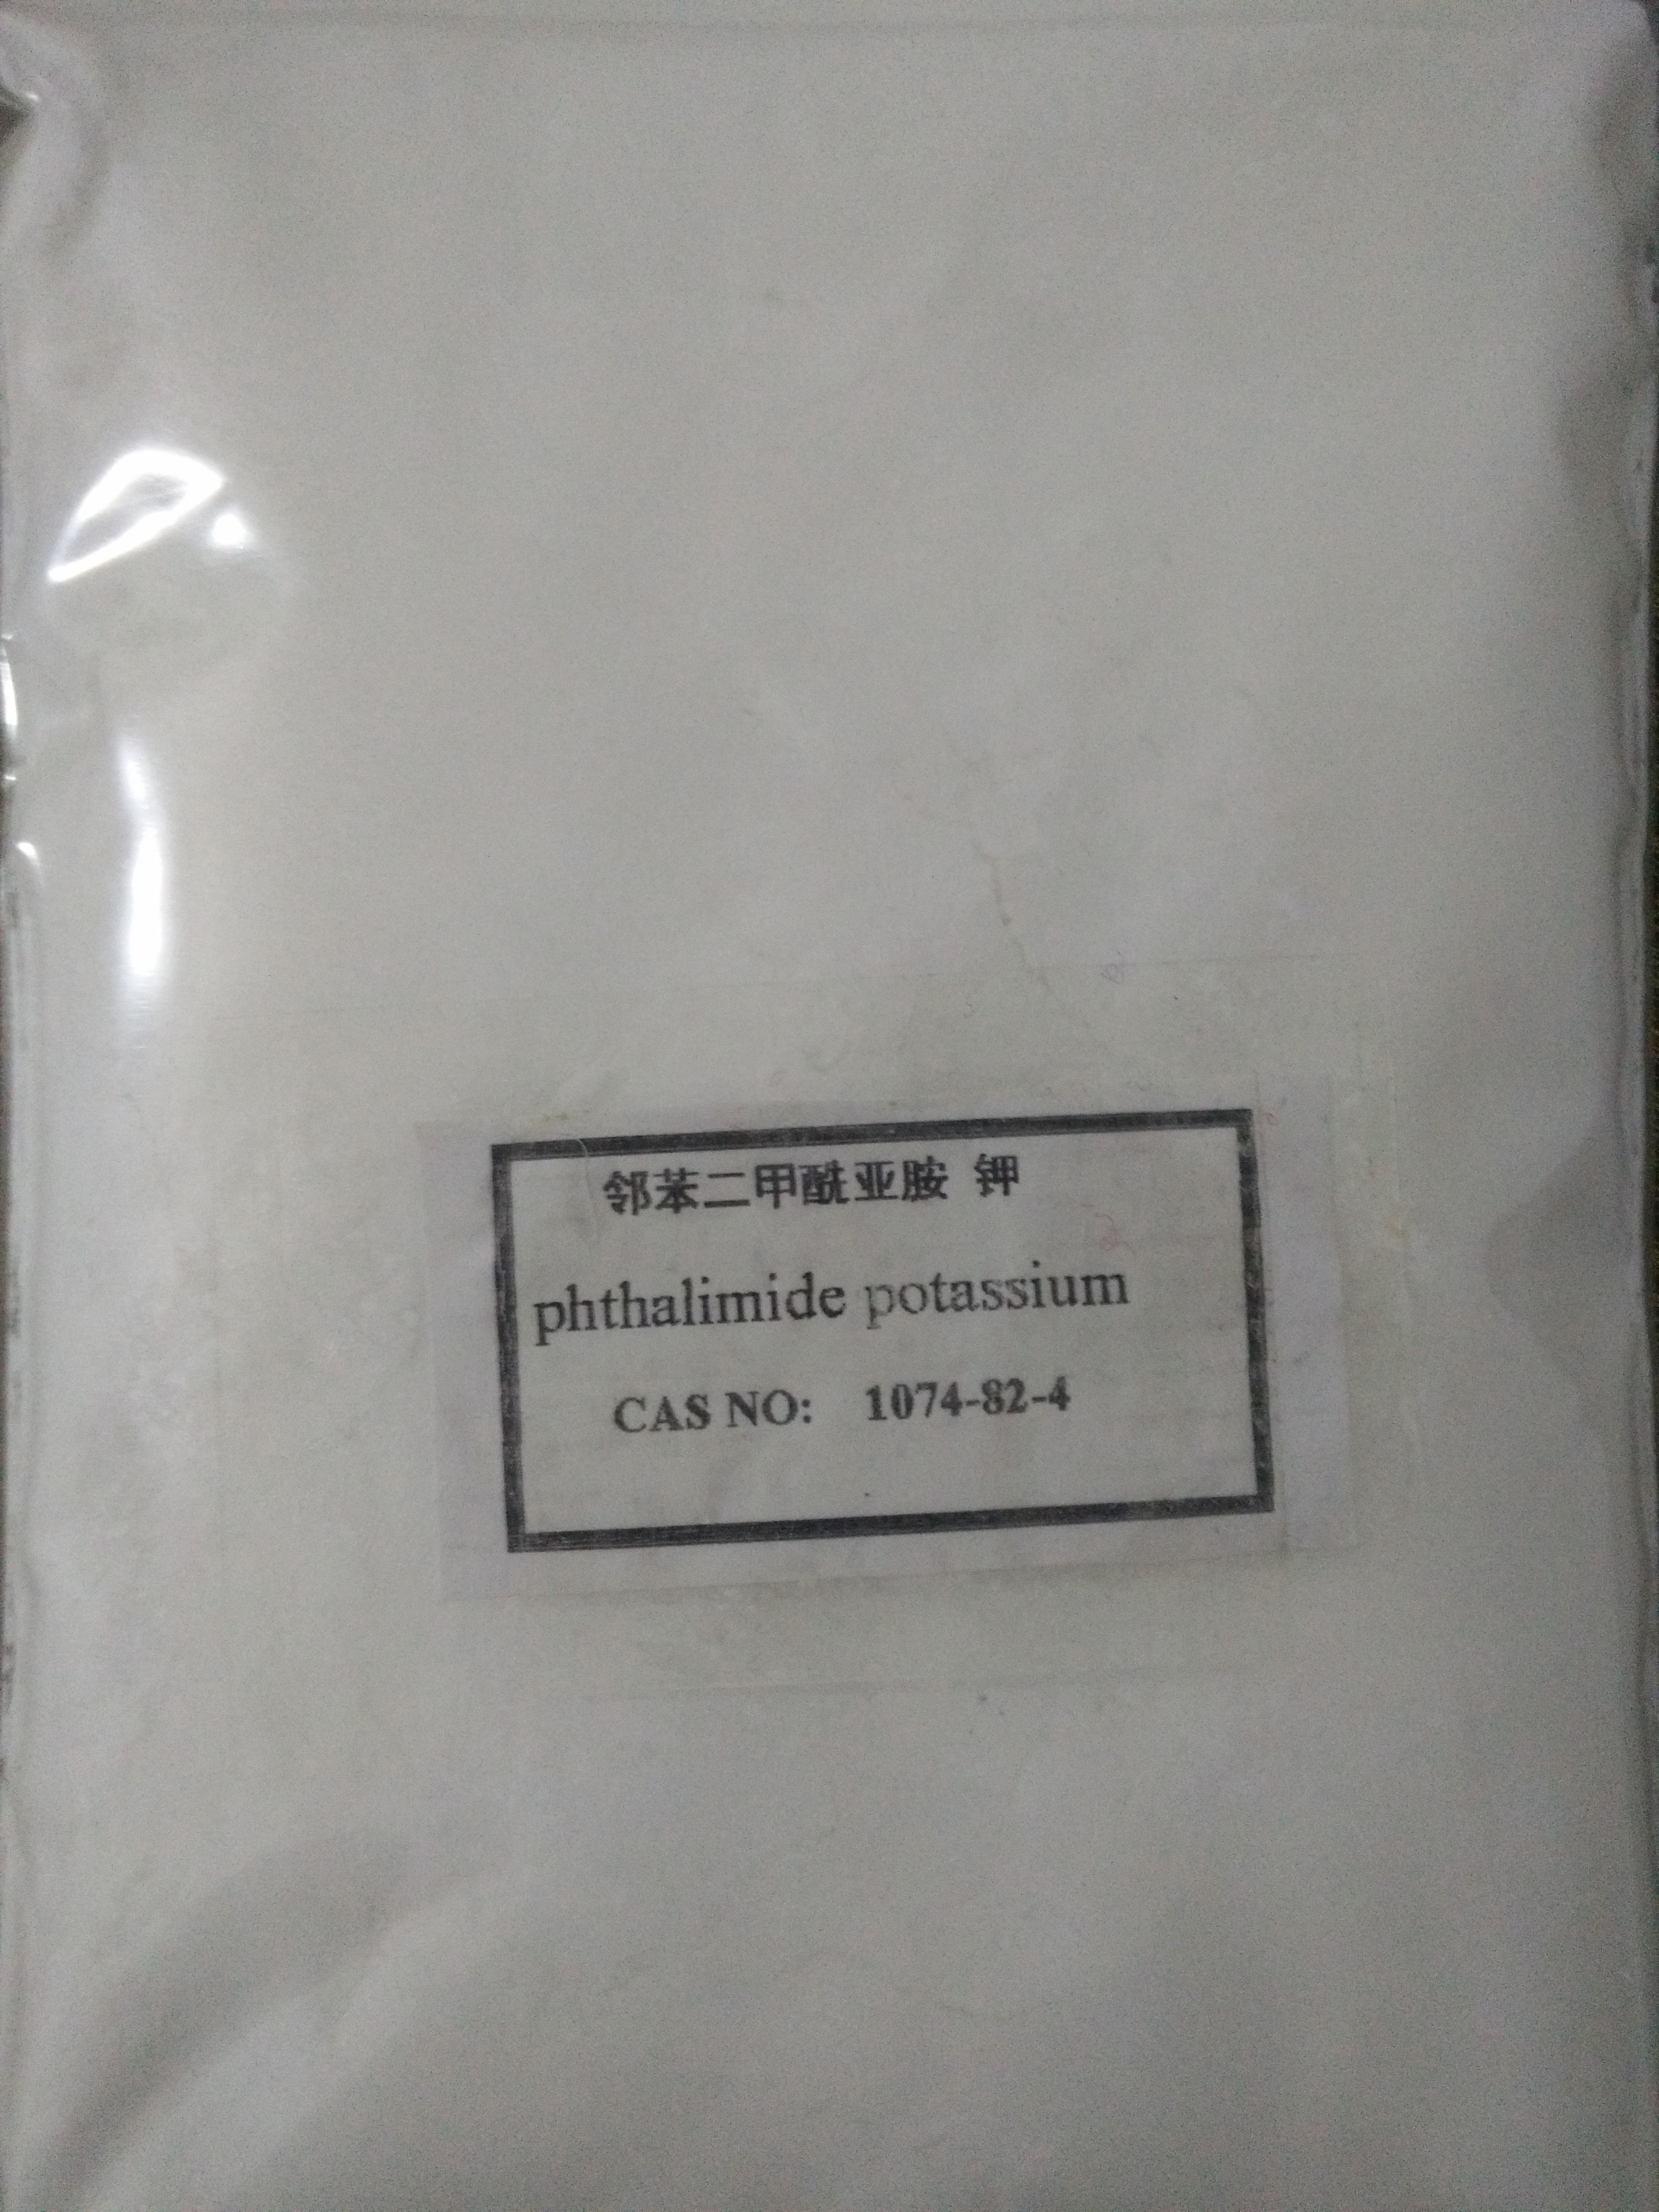 邻苯二甲酰亚胺钾,phthalimide potassium